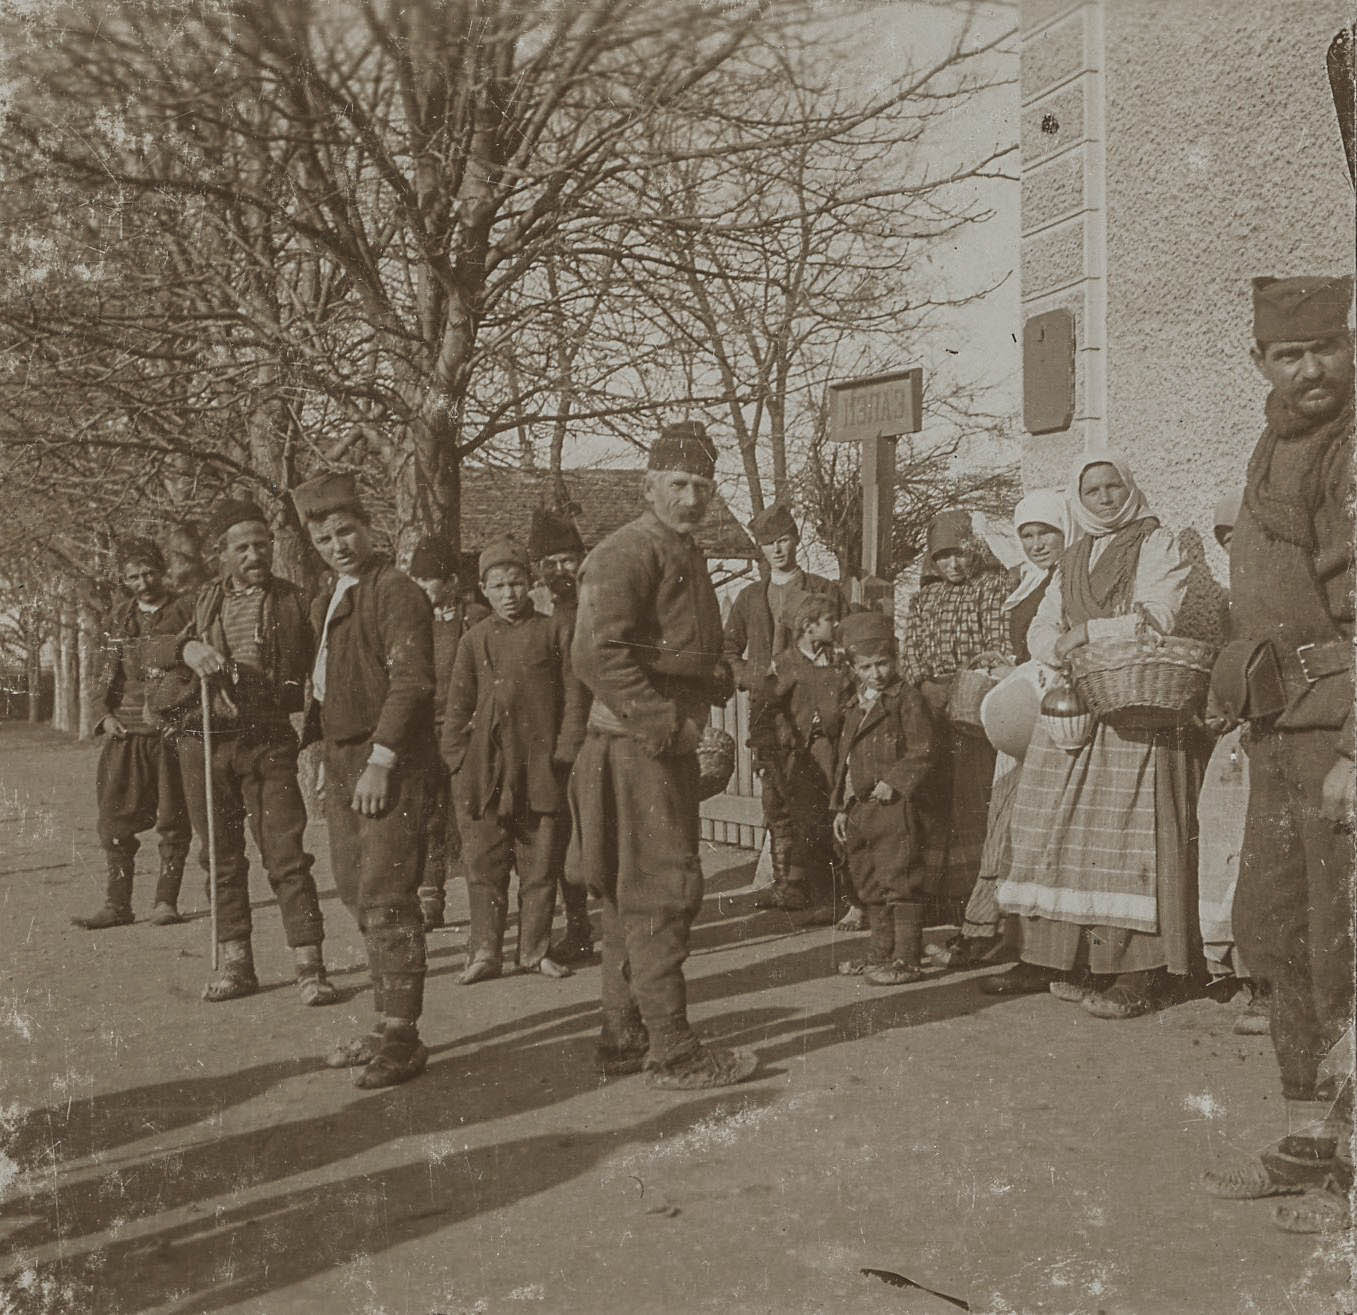 Bevolking in lokale klederdracht met op de achtergrond een bord met cyrillische tekst, 1912-1913. 